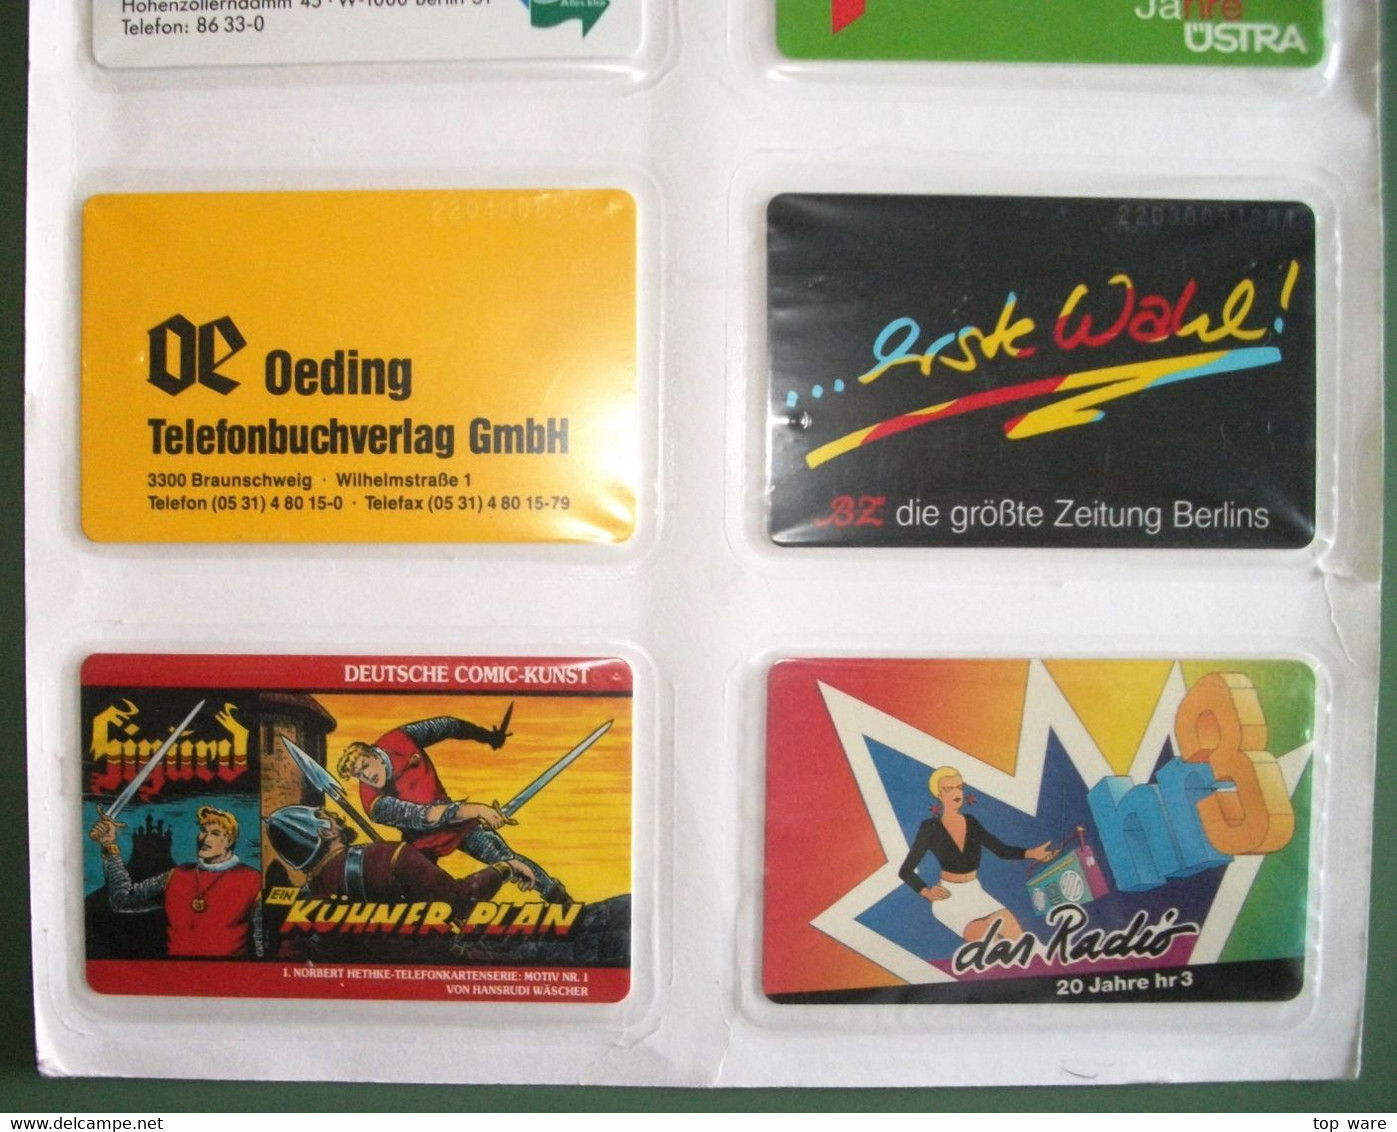 8 Telefonkarten Aus 1992 - S41 S44 S45 S47 S48 S49 S52 S57  - Original Verschweißt Vom Zentralen Kartenservice - Verzamelingen